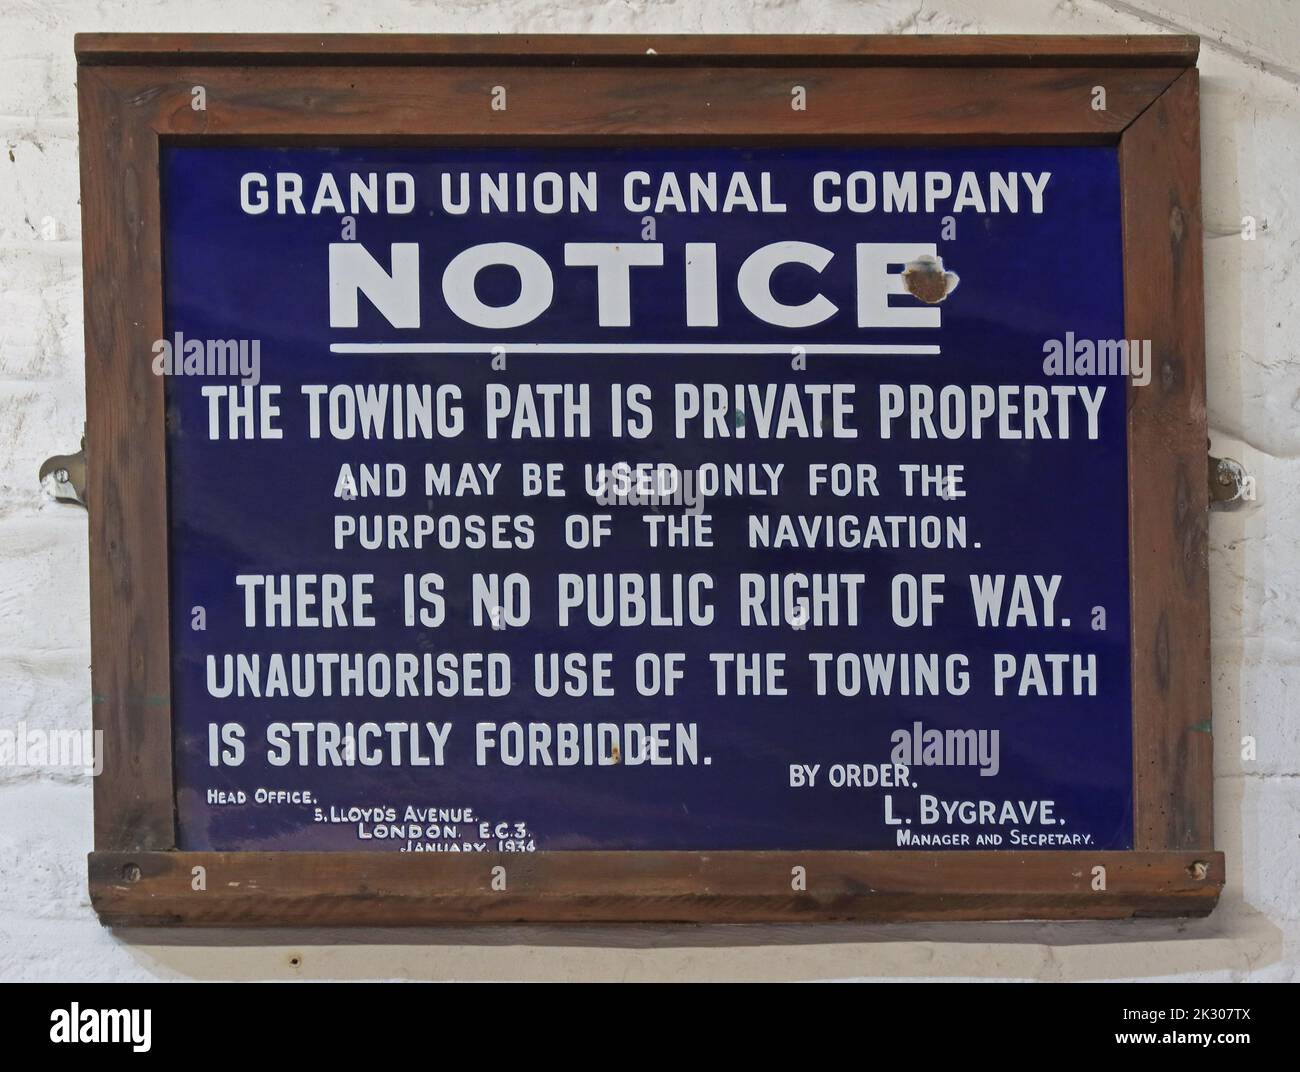 Note de la compagnie du canal Grand Union encadré bleu, la voie de remorquage est une propriété privée et ne peut être utilisée qu'aux fins de la navigation Banque D'Images